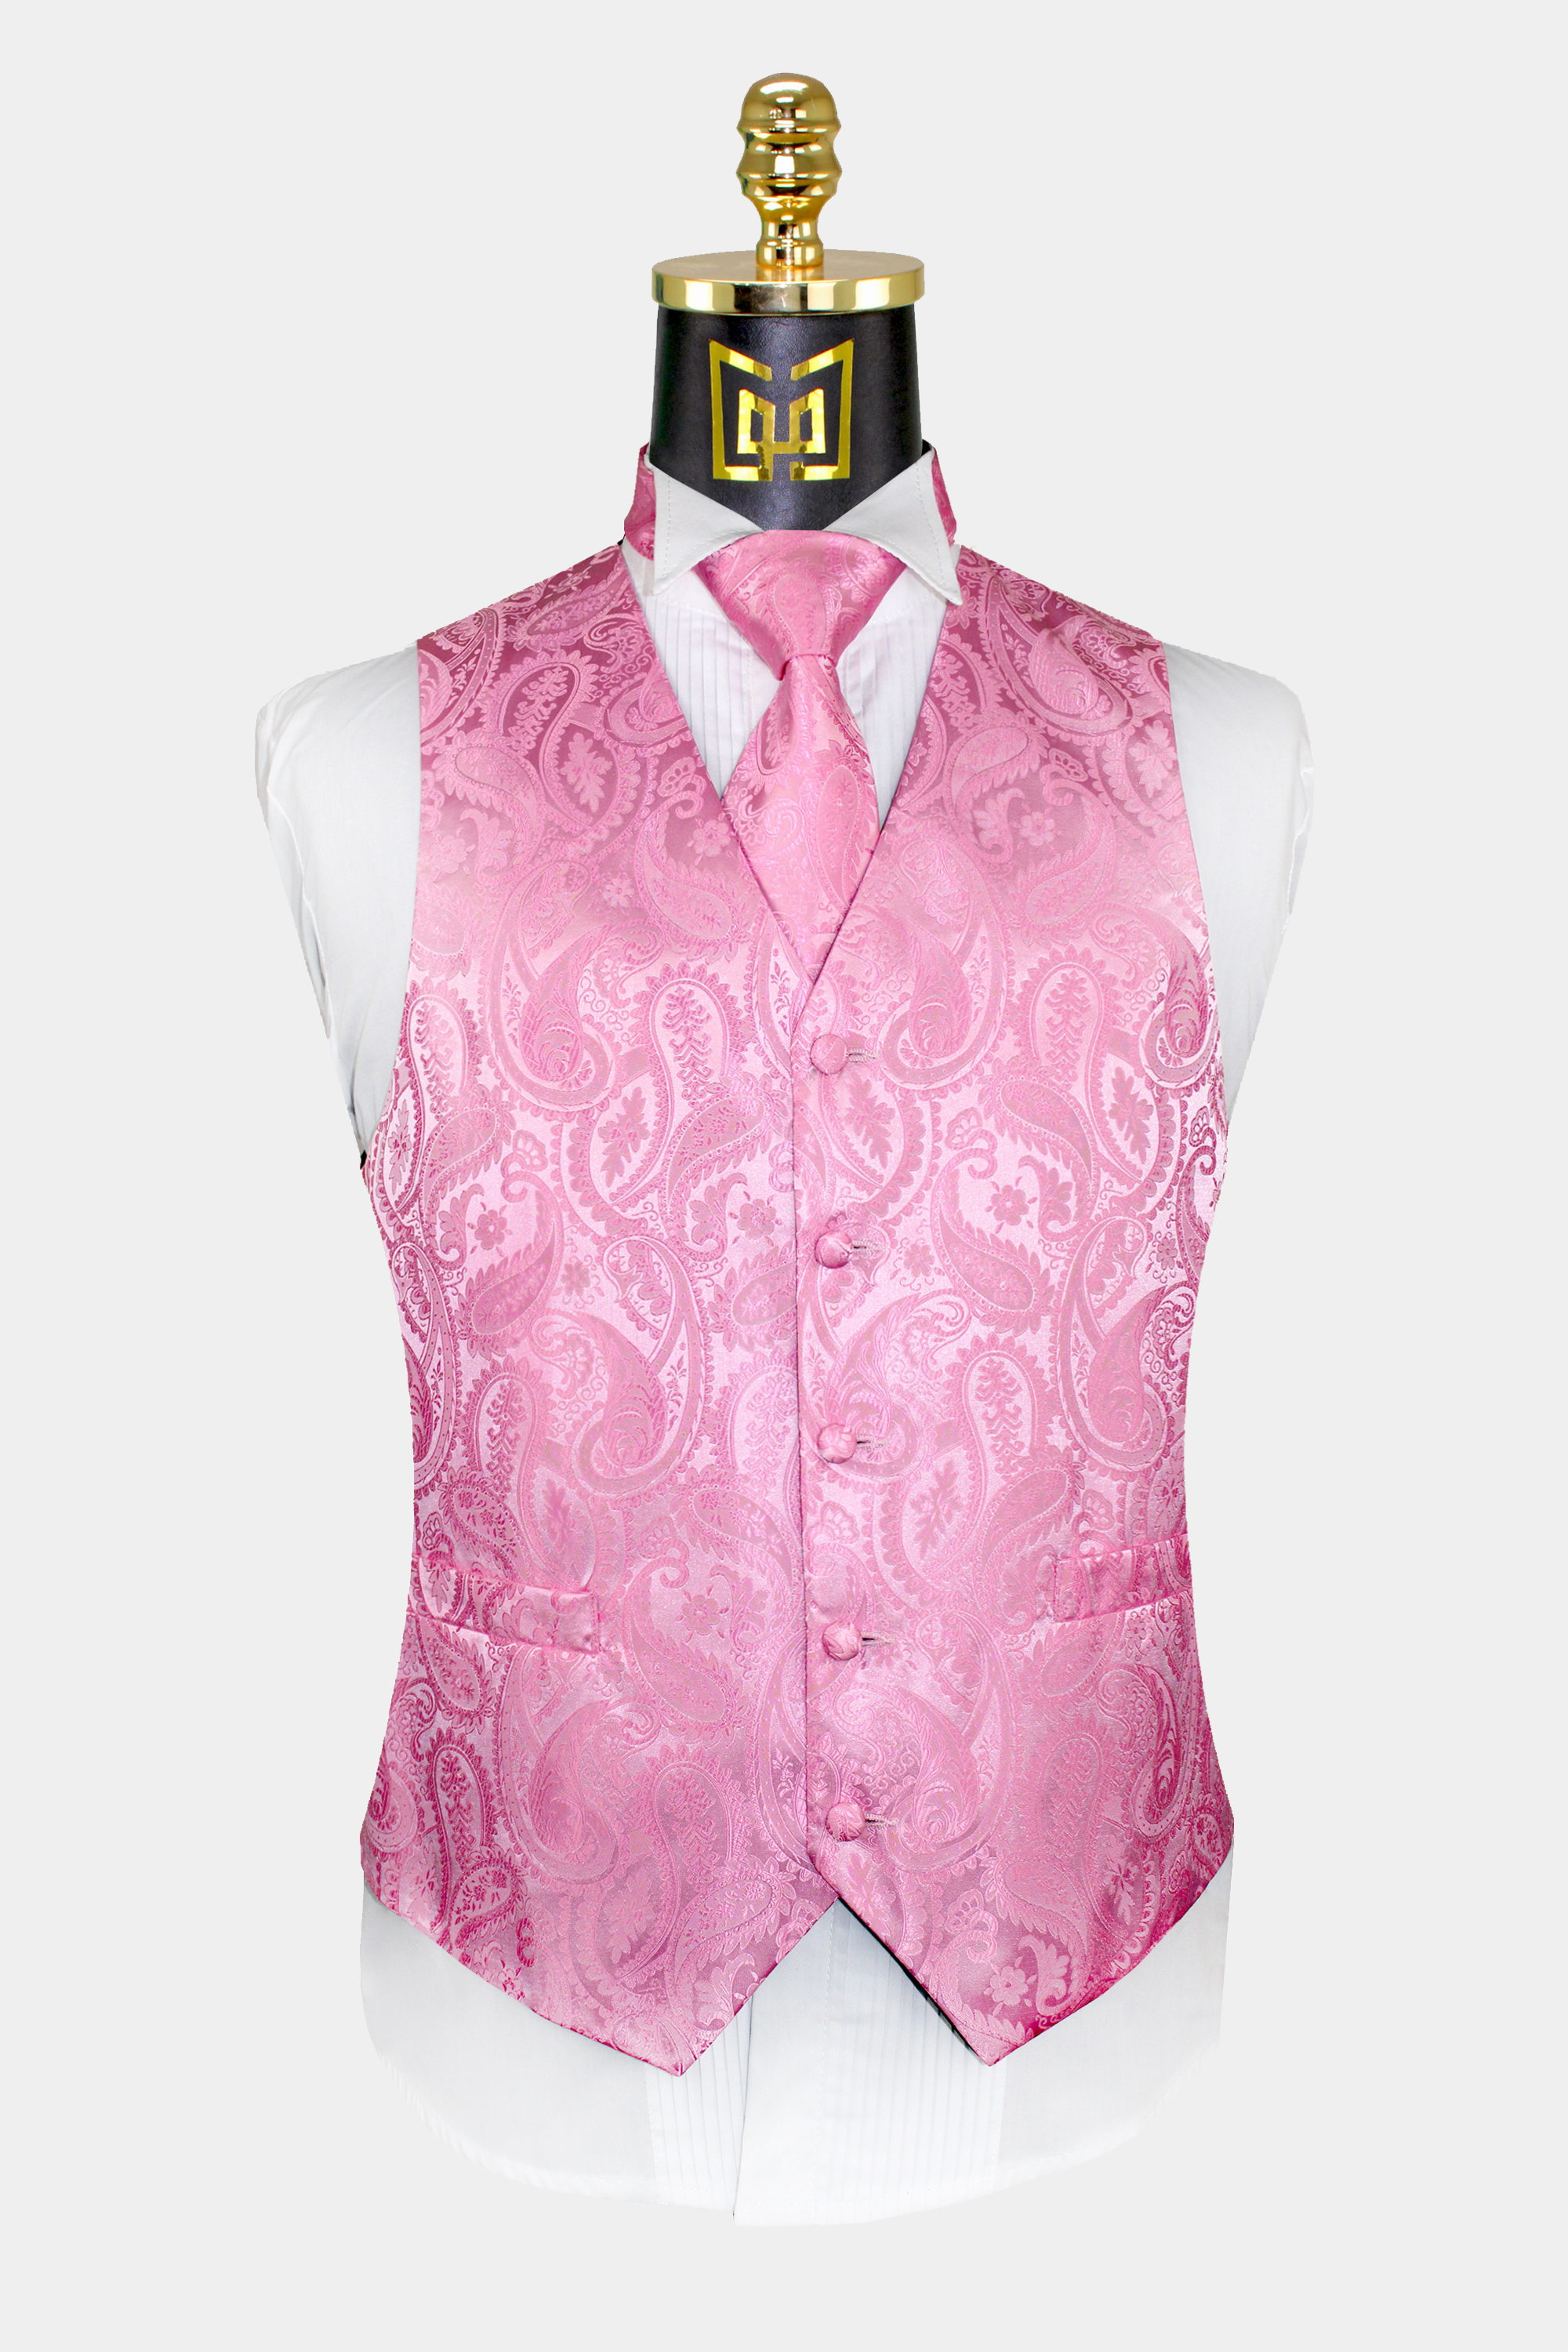 Mens-Pink-Paisley-Vest-and-Tie-Set-Wedding-Groom-Tuxedo-Vest-Waistcoat-from-Gentlemansguru.com_